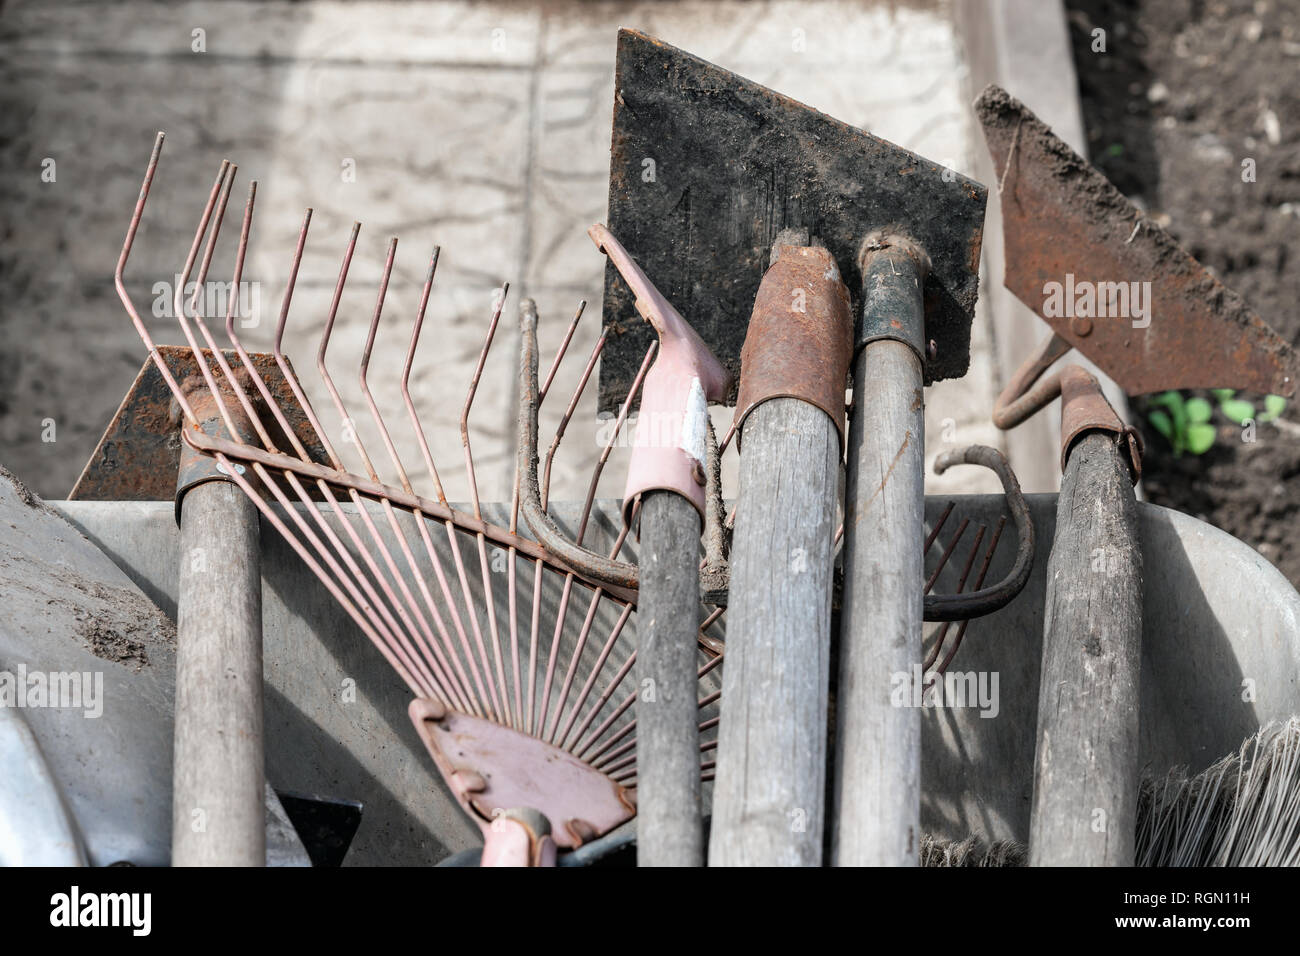 Un ensemble d'outils de jardin sale vieux utilisé, un râteau, pelles, binettes dans une brouette , close-up Banque D'Images